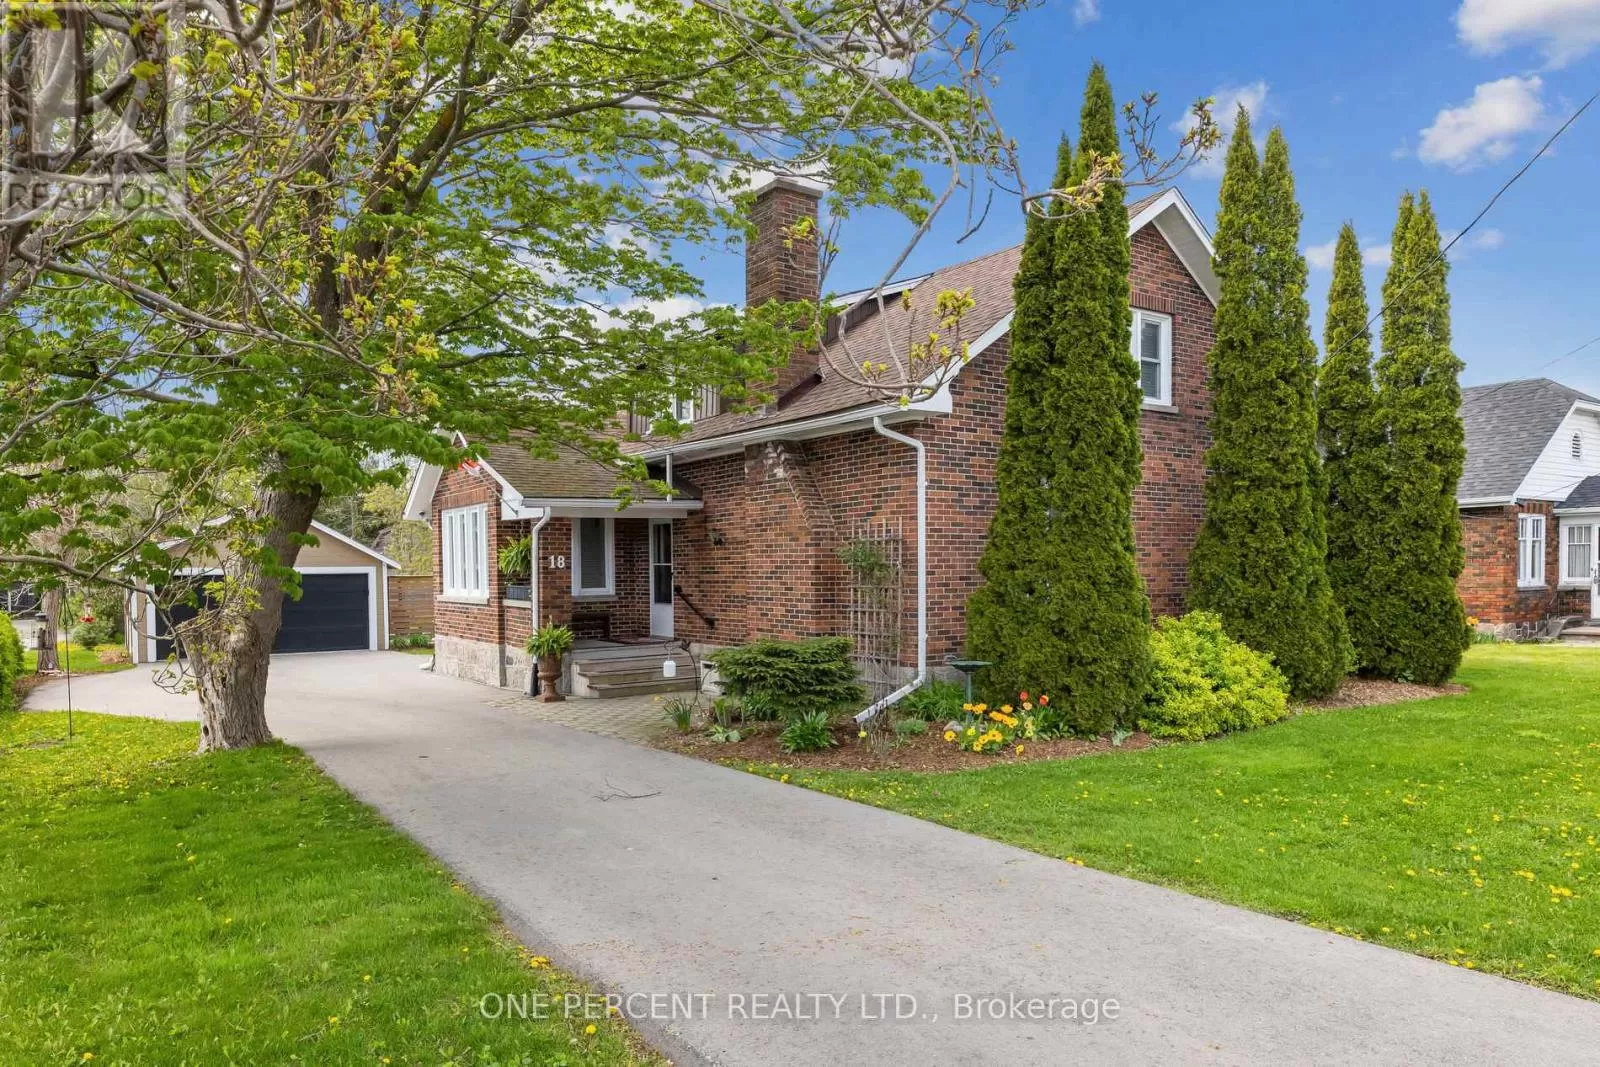 House for rent: 18 Joseph Street, Kawartha Lakes, Ontario K0M 1A0